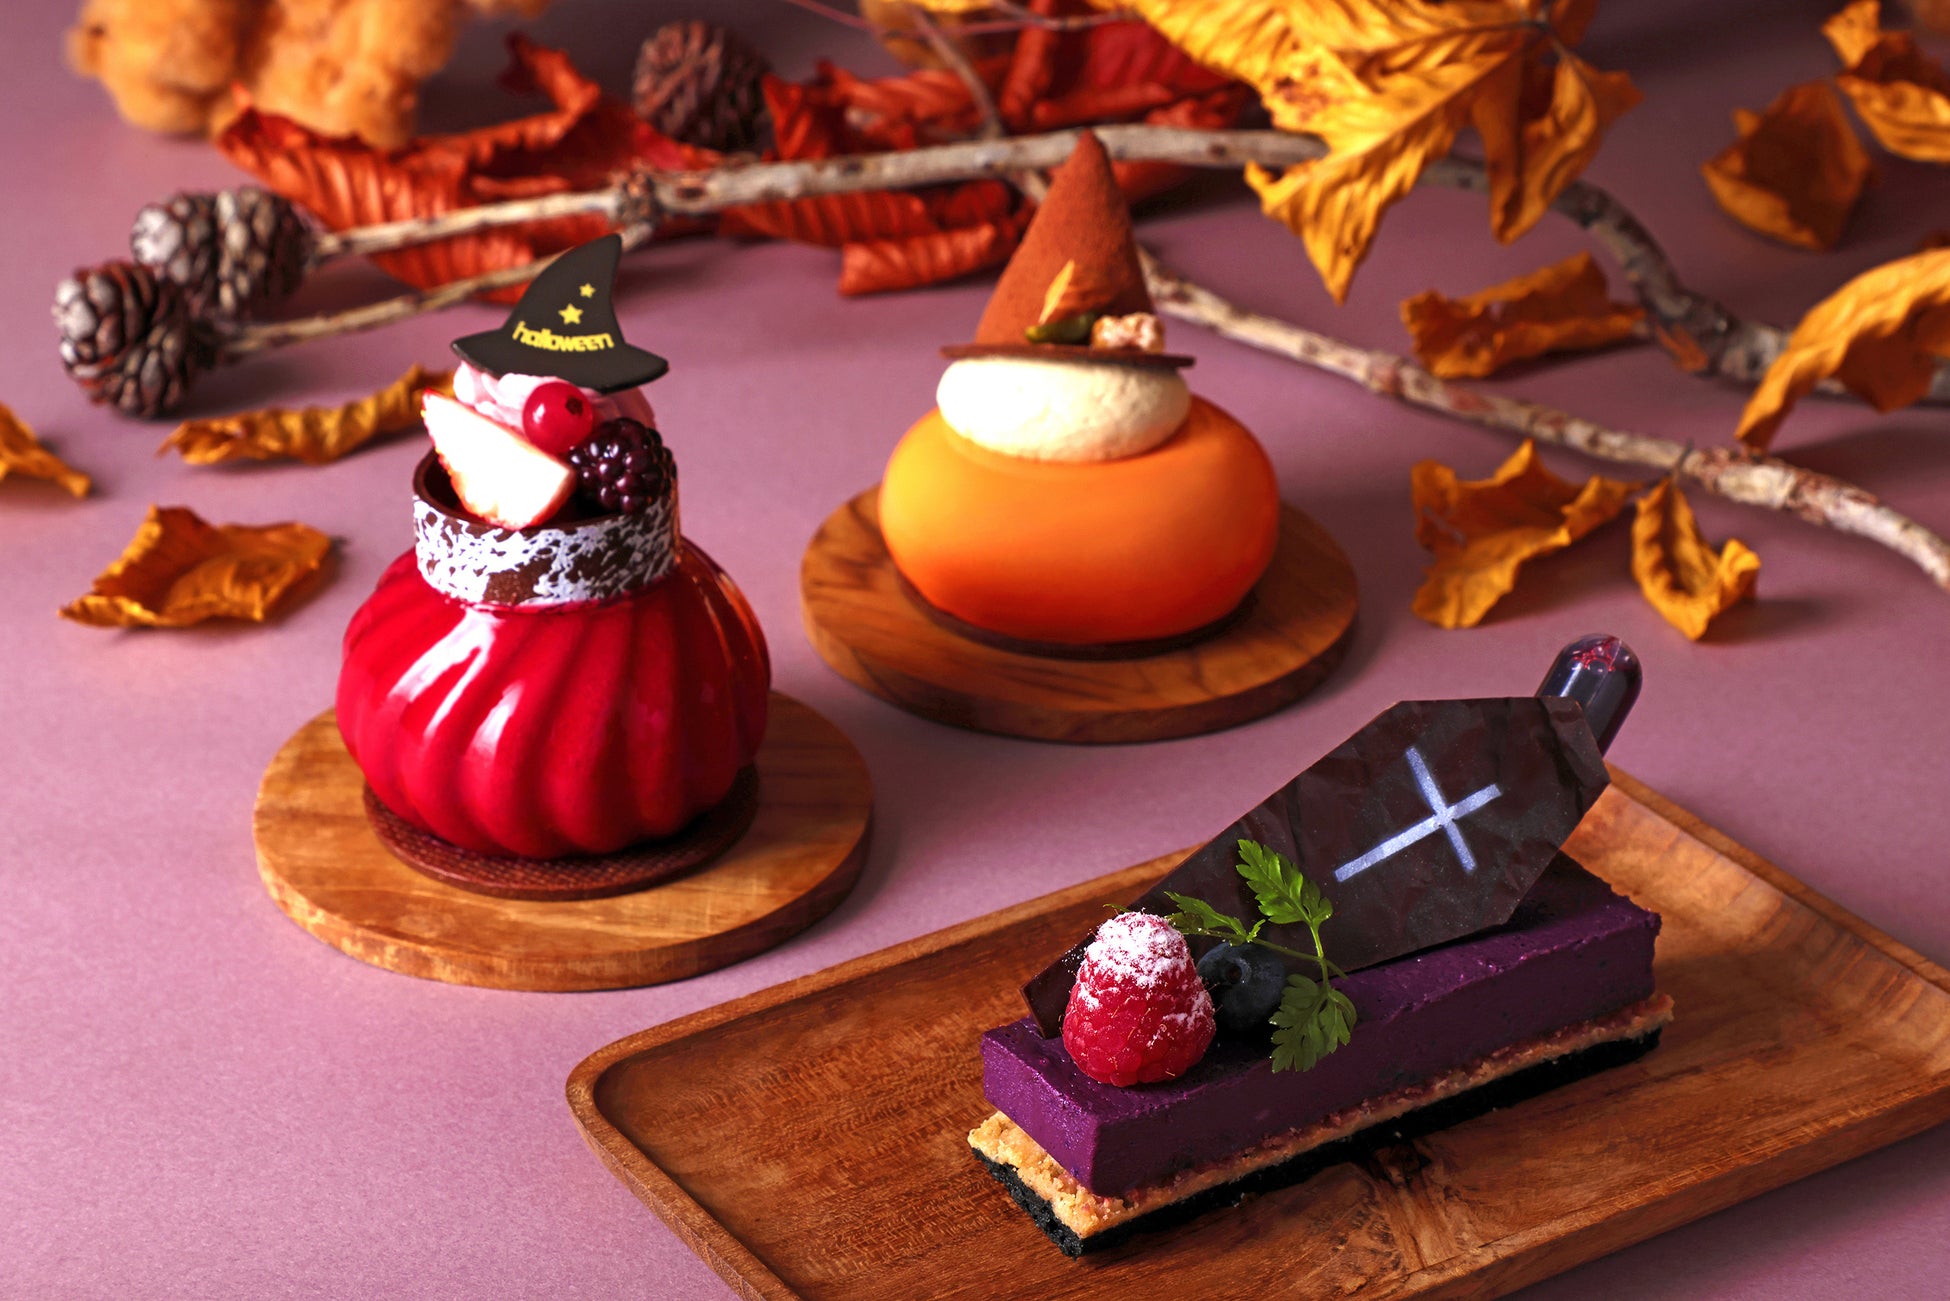 ハロウィンをテーマにしたパン・スイーツ・総菜のテイクアウトメニューが勢揃いグルメブティック メリッサ「秋の収穫祭」